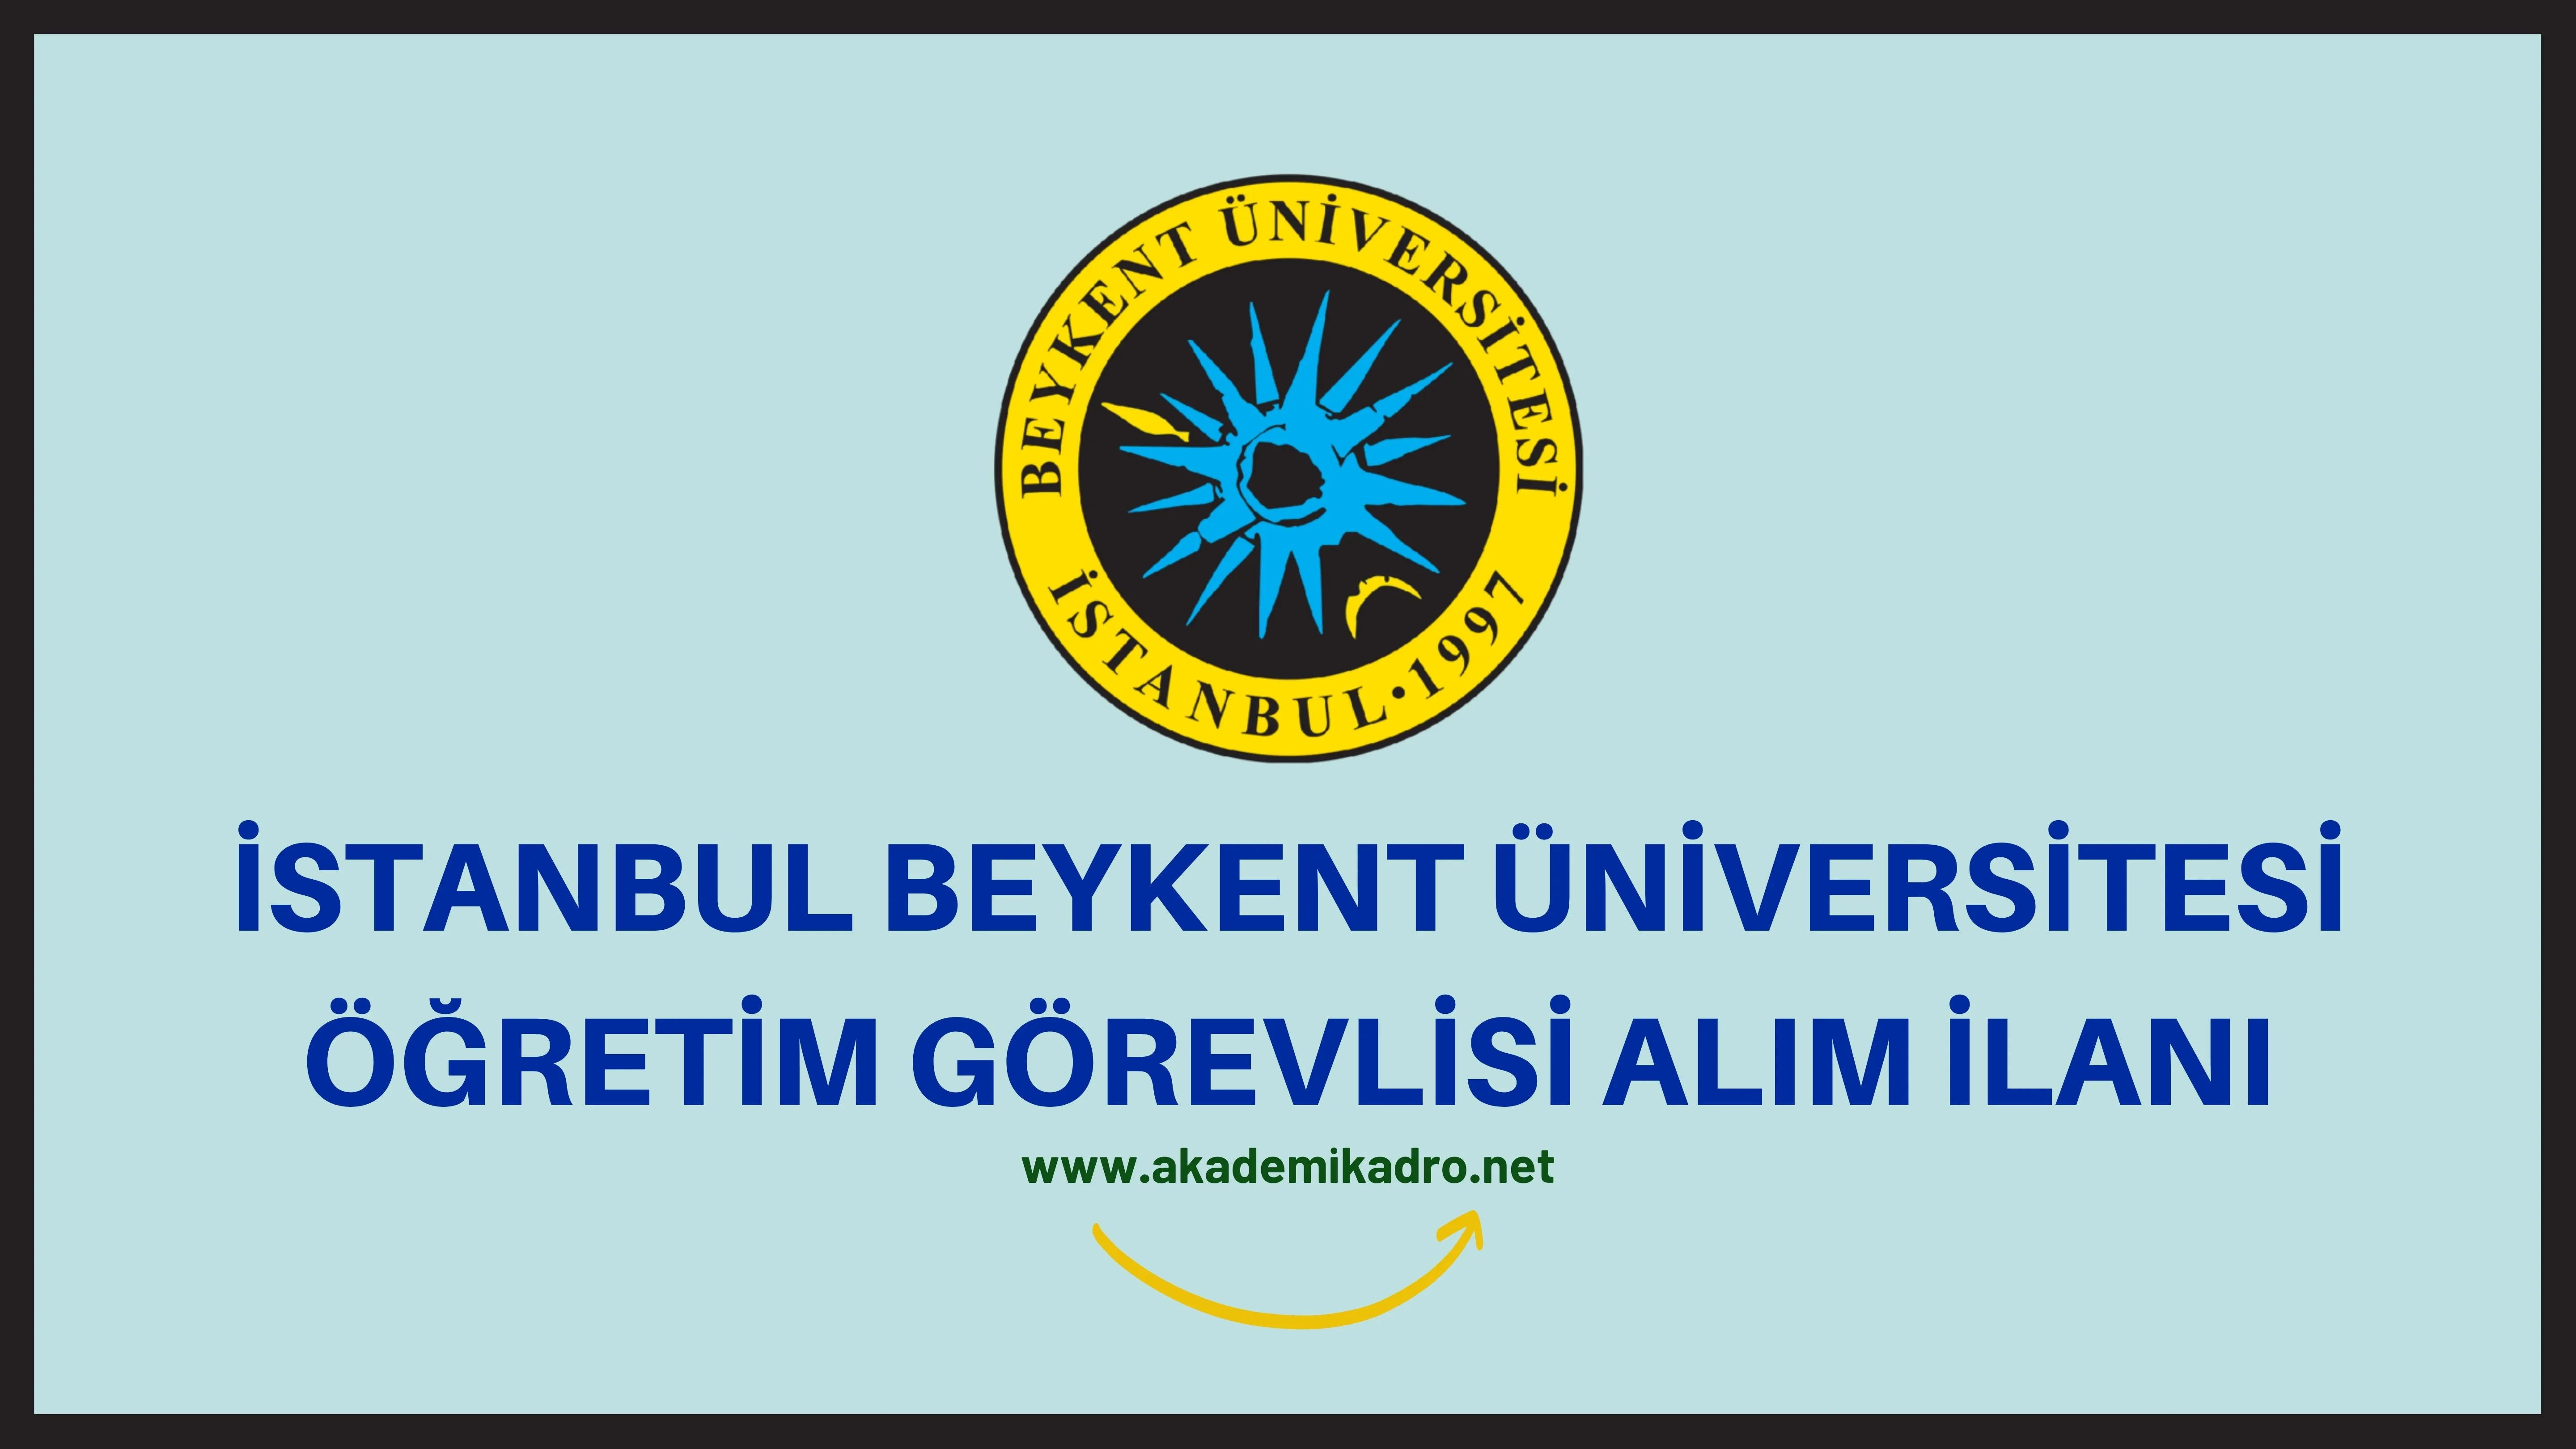 İstanbul Beykent Üniversitesi Öğretim görevlisi alacak.